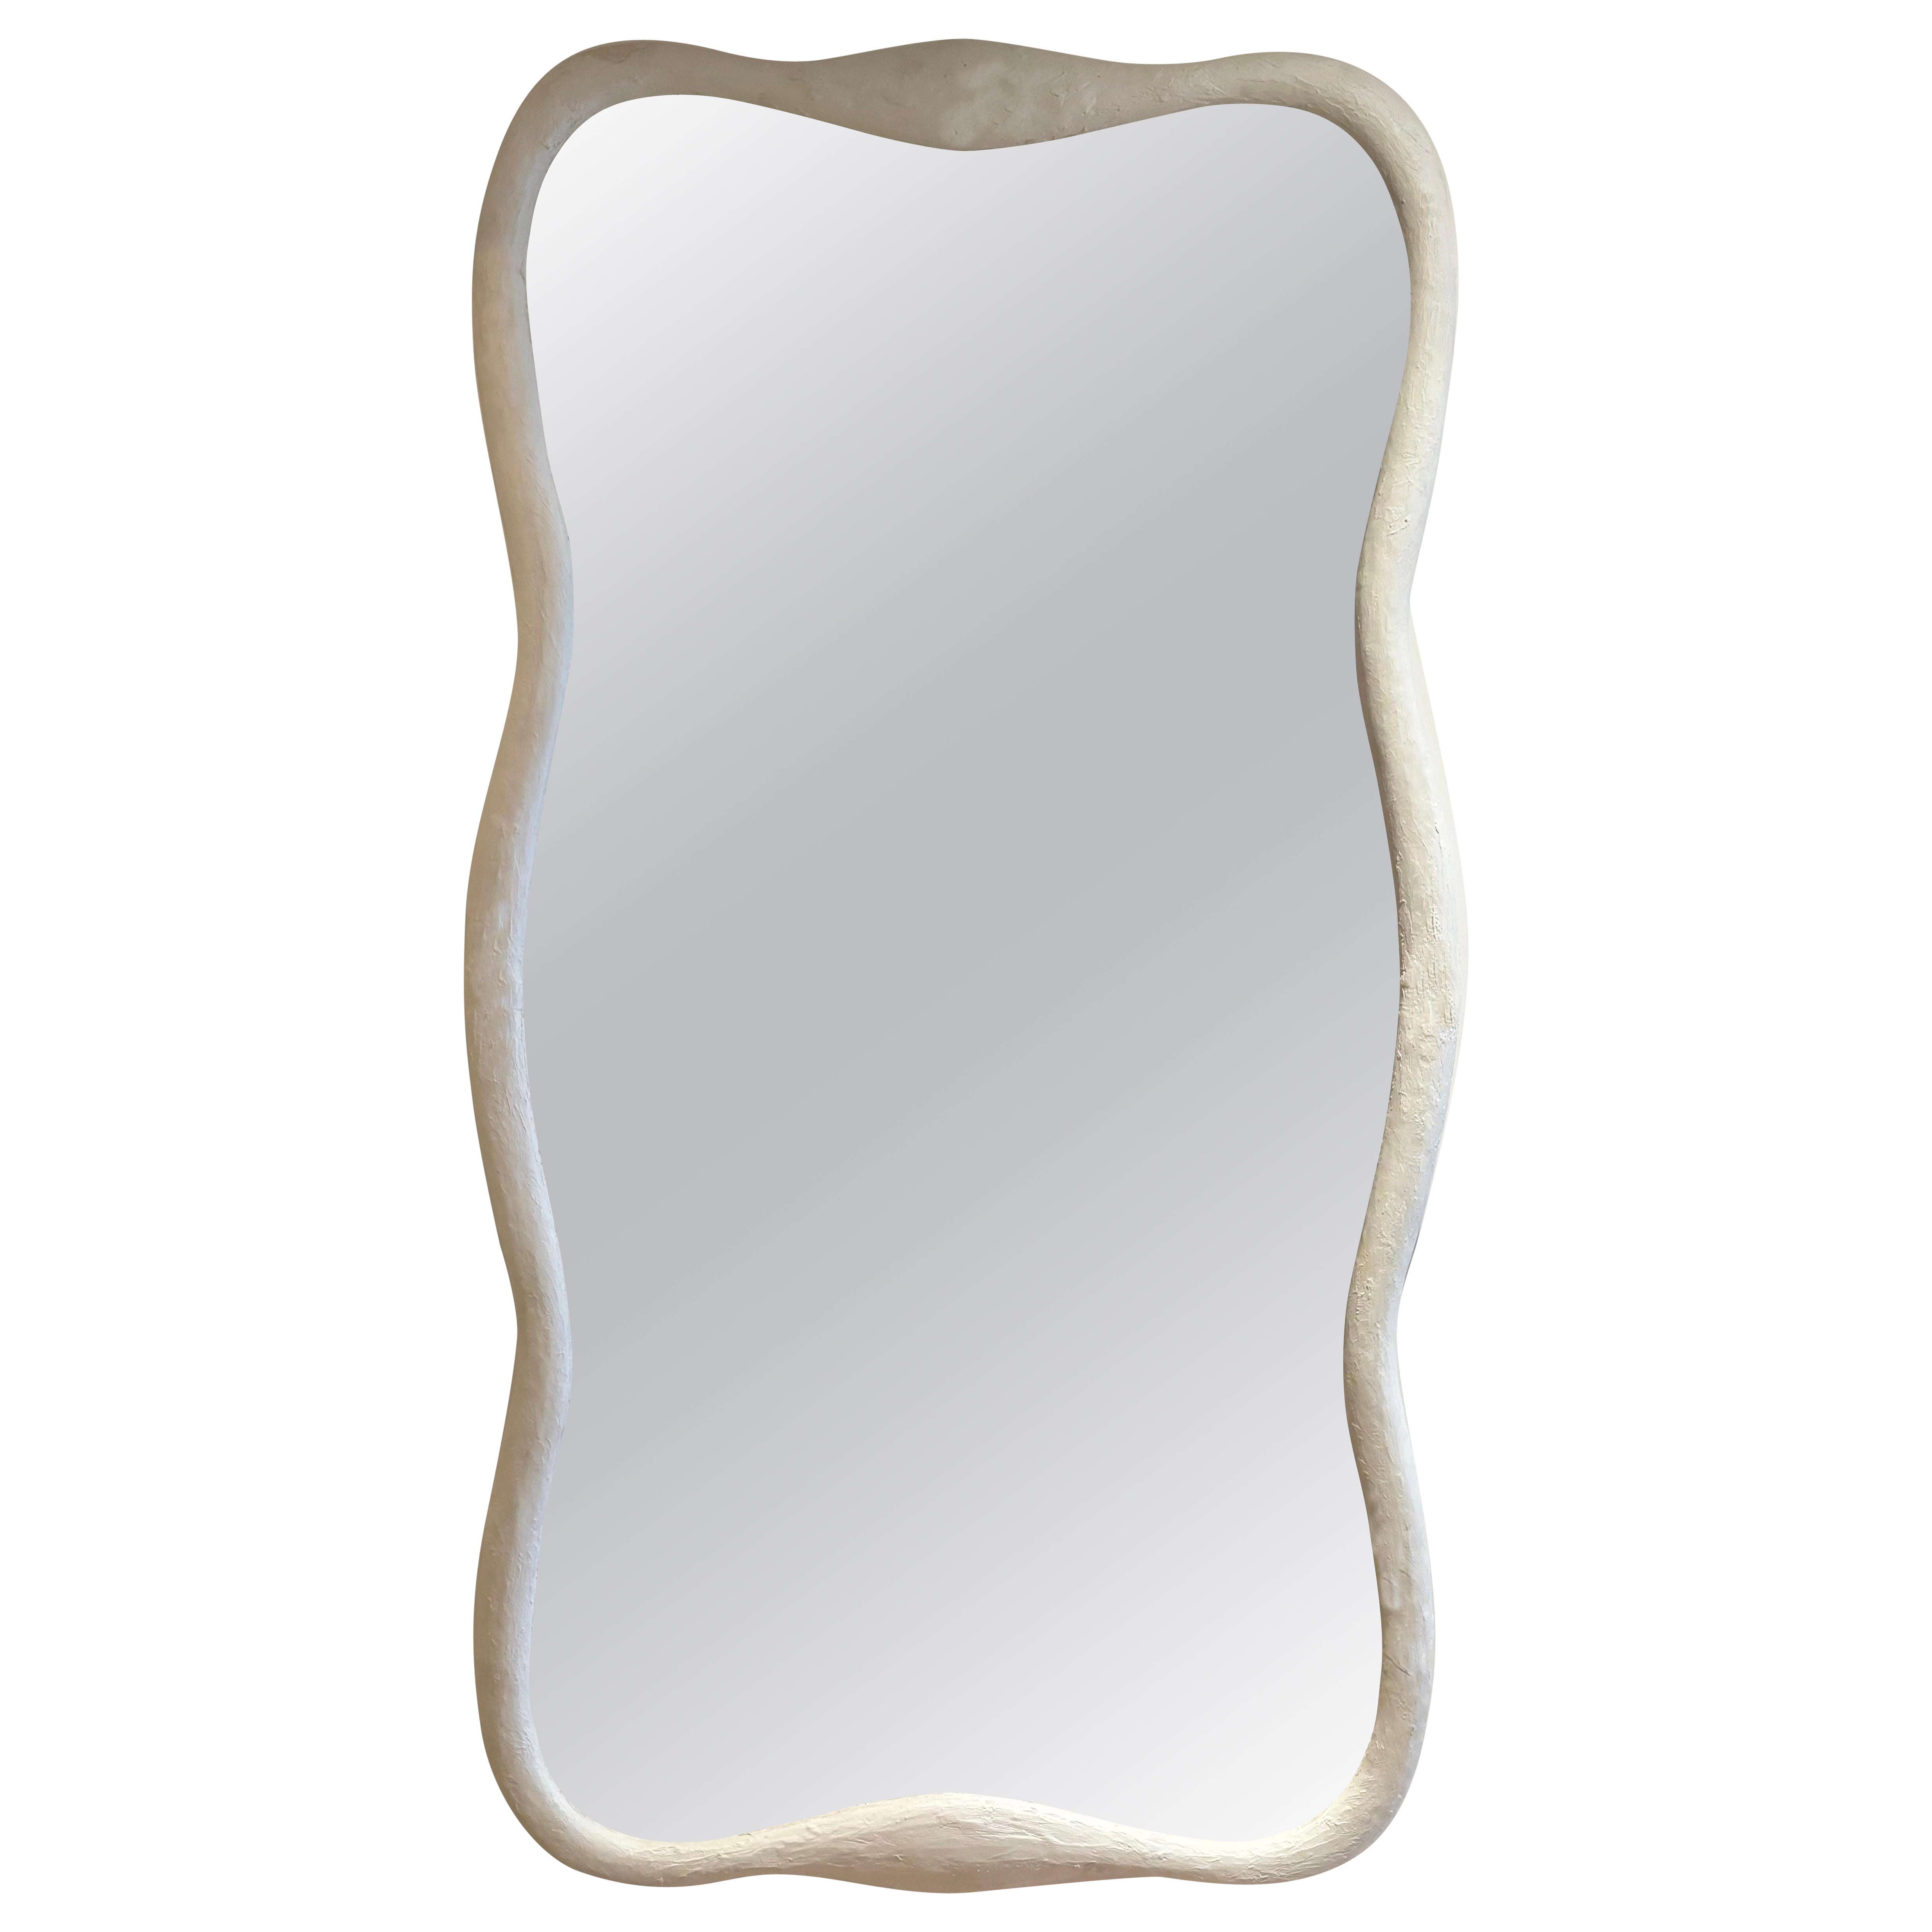 VM-Plaster Mirror